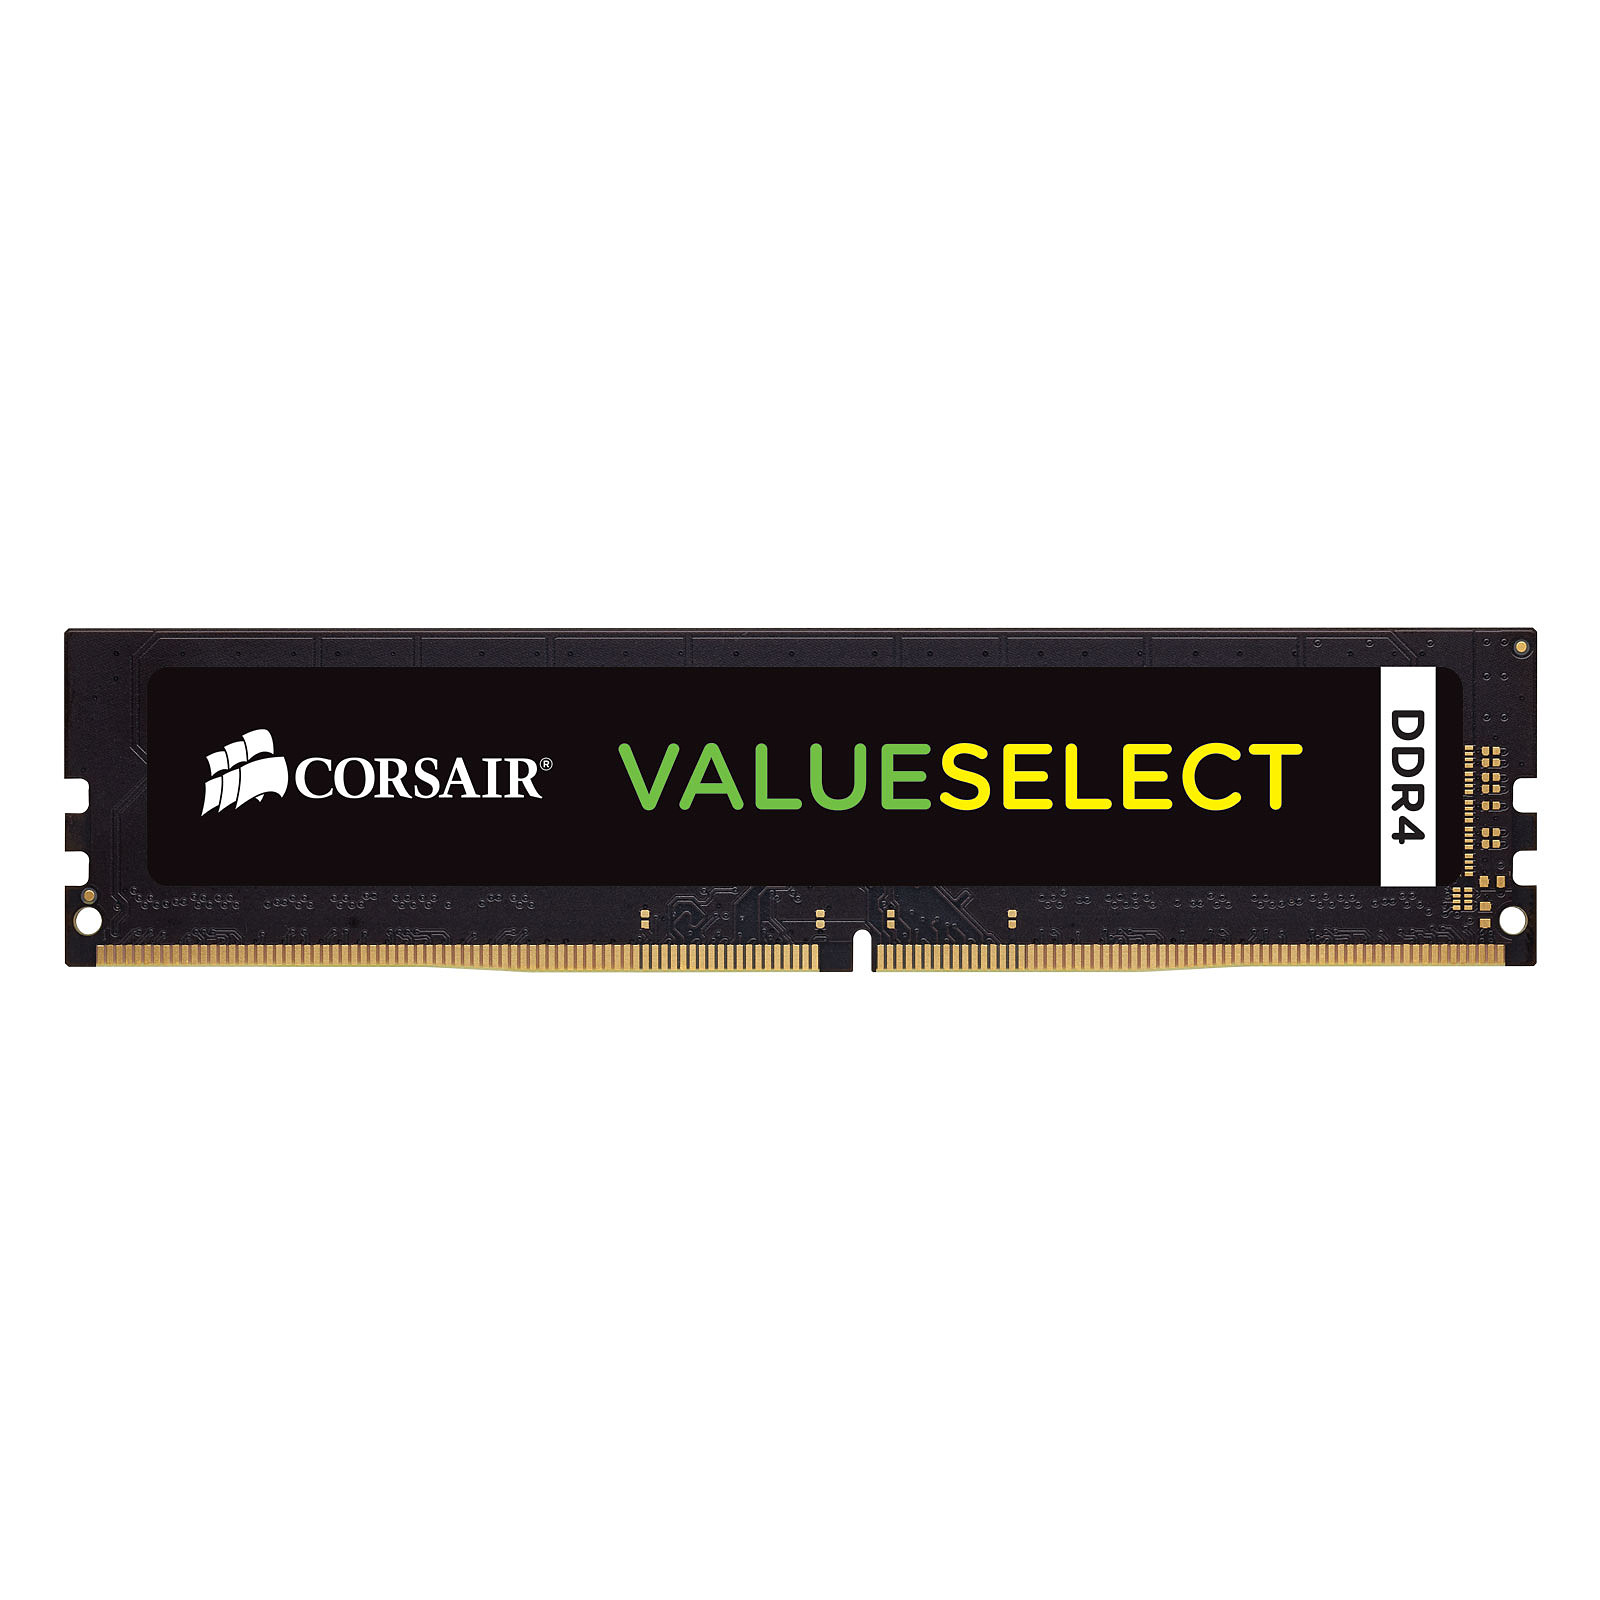 Corsair ValueSelect 4 Go DDR4 2133 MHz CL15 - Memoire PC Corsair